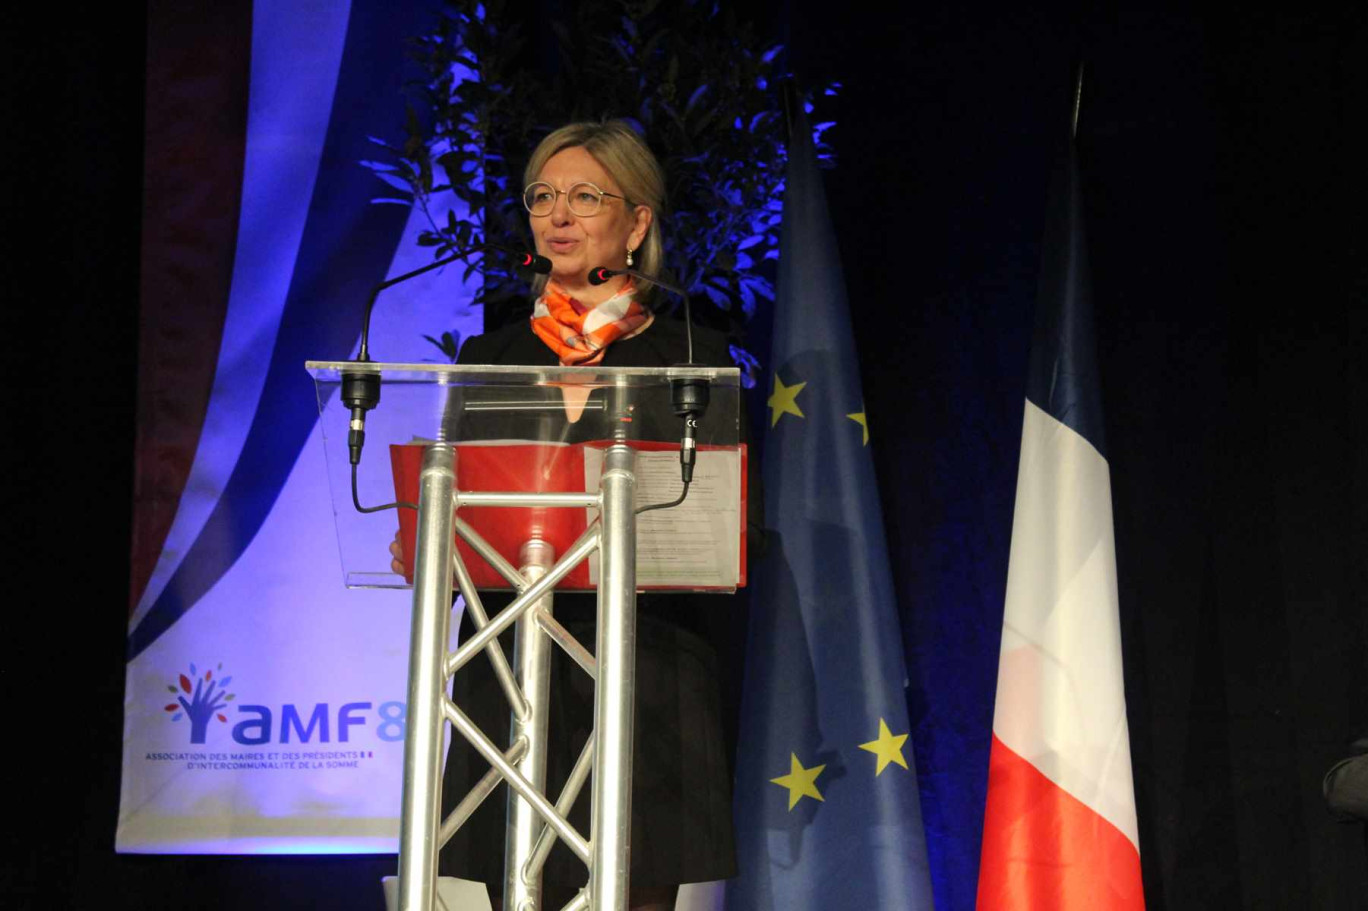 Bénédicte Thiébaut, président de l'AMF 80 a exposé les problématiques rencontrées par les maires de la Somme tout en appelant à rester positif et à garder le cap.